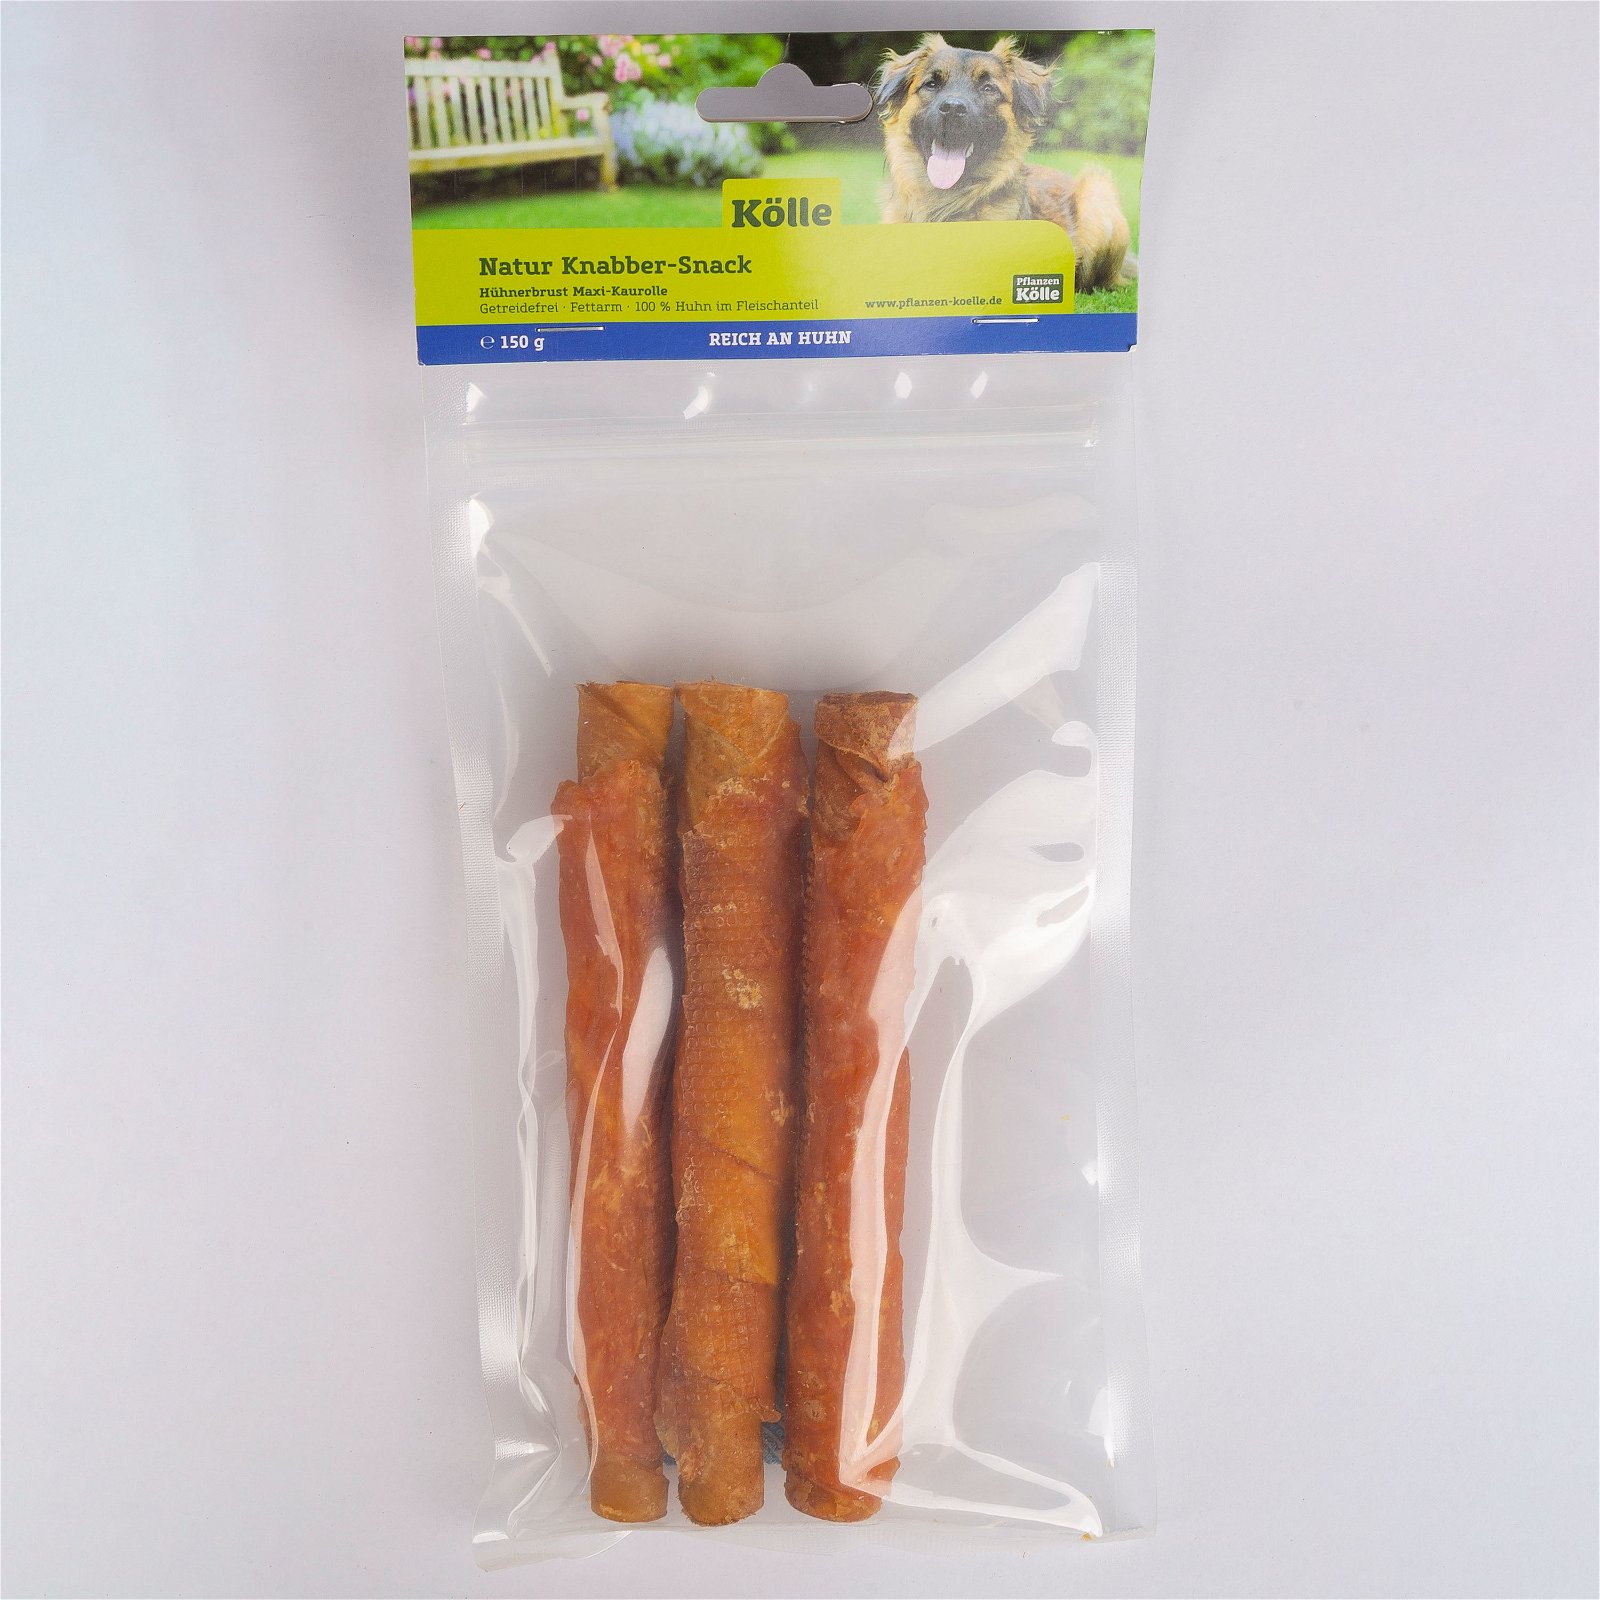 Natur Knabber-Snack für Hunde, Maxi-Kaurolle mit Huhn, 3er-Set, 150 g